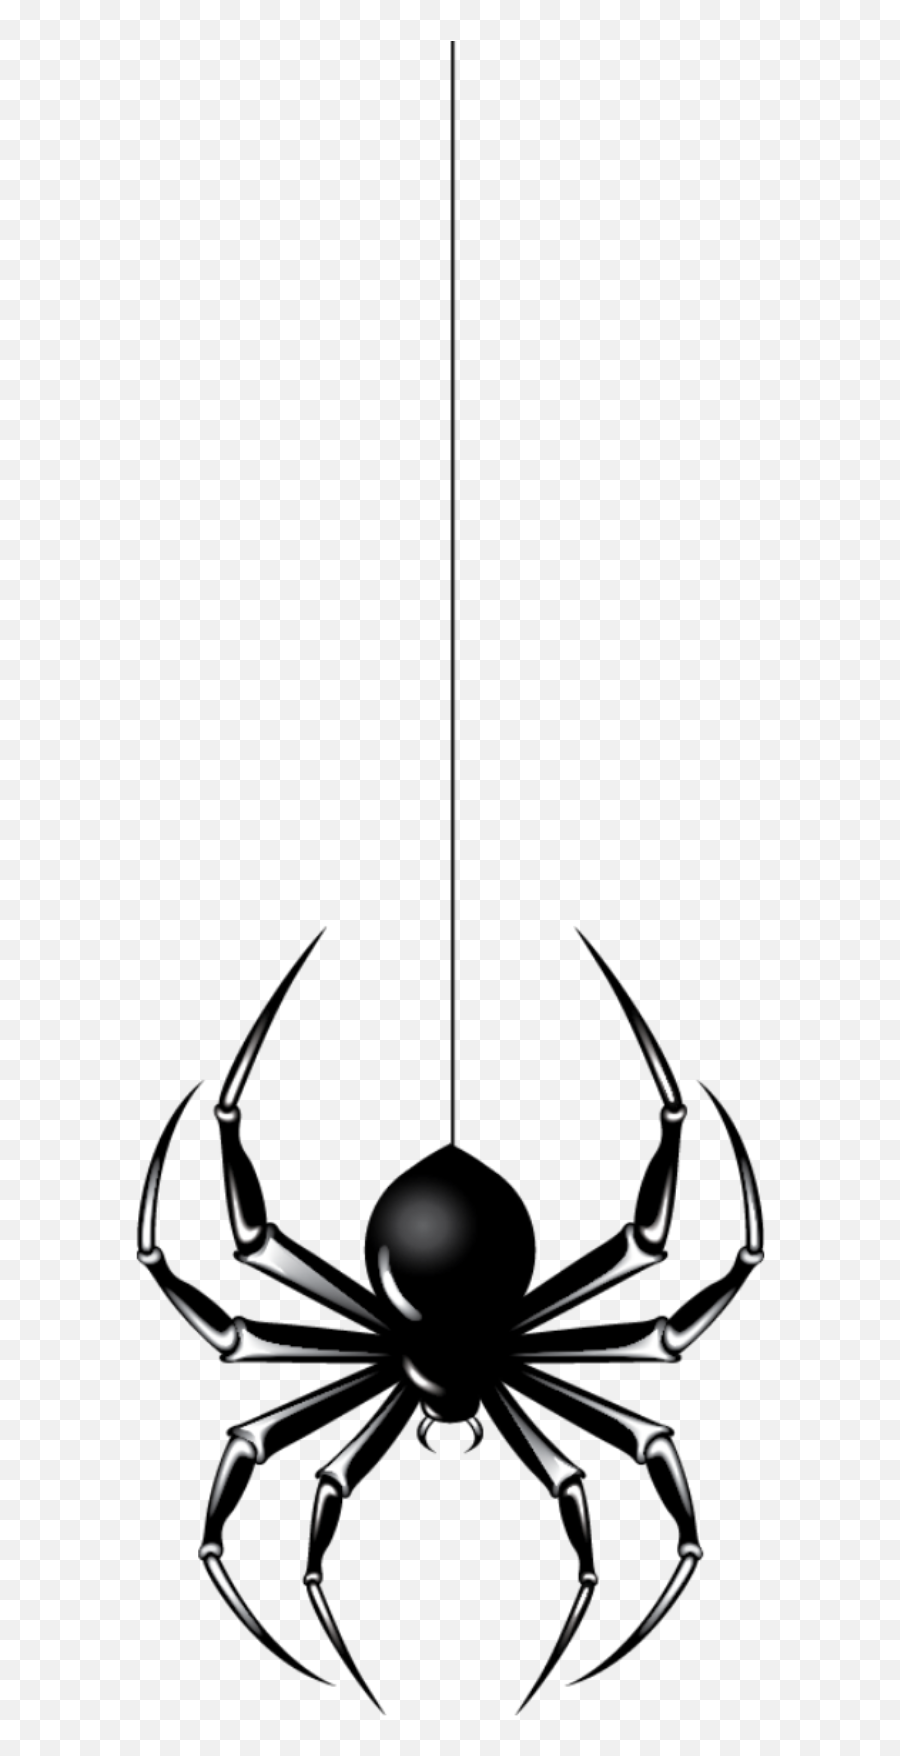 Download Hanging Spider Hq Png Image - Vertical,Hanging Spider Png